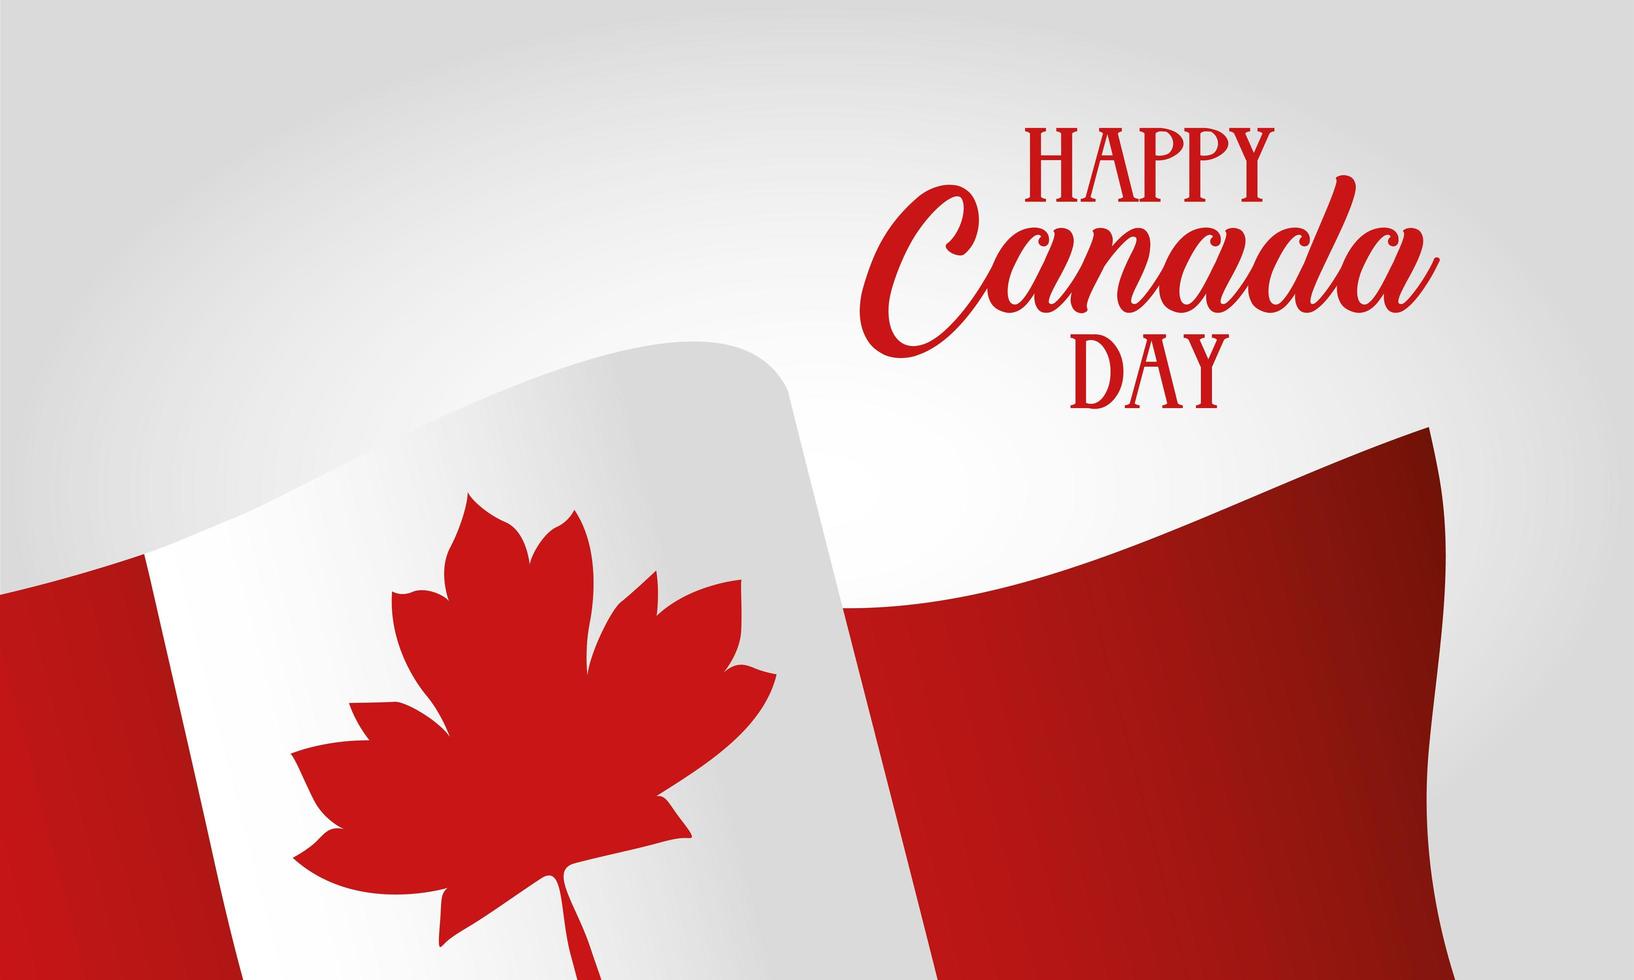 Kanada dag firande kort med flagga vektor